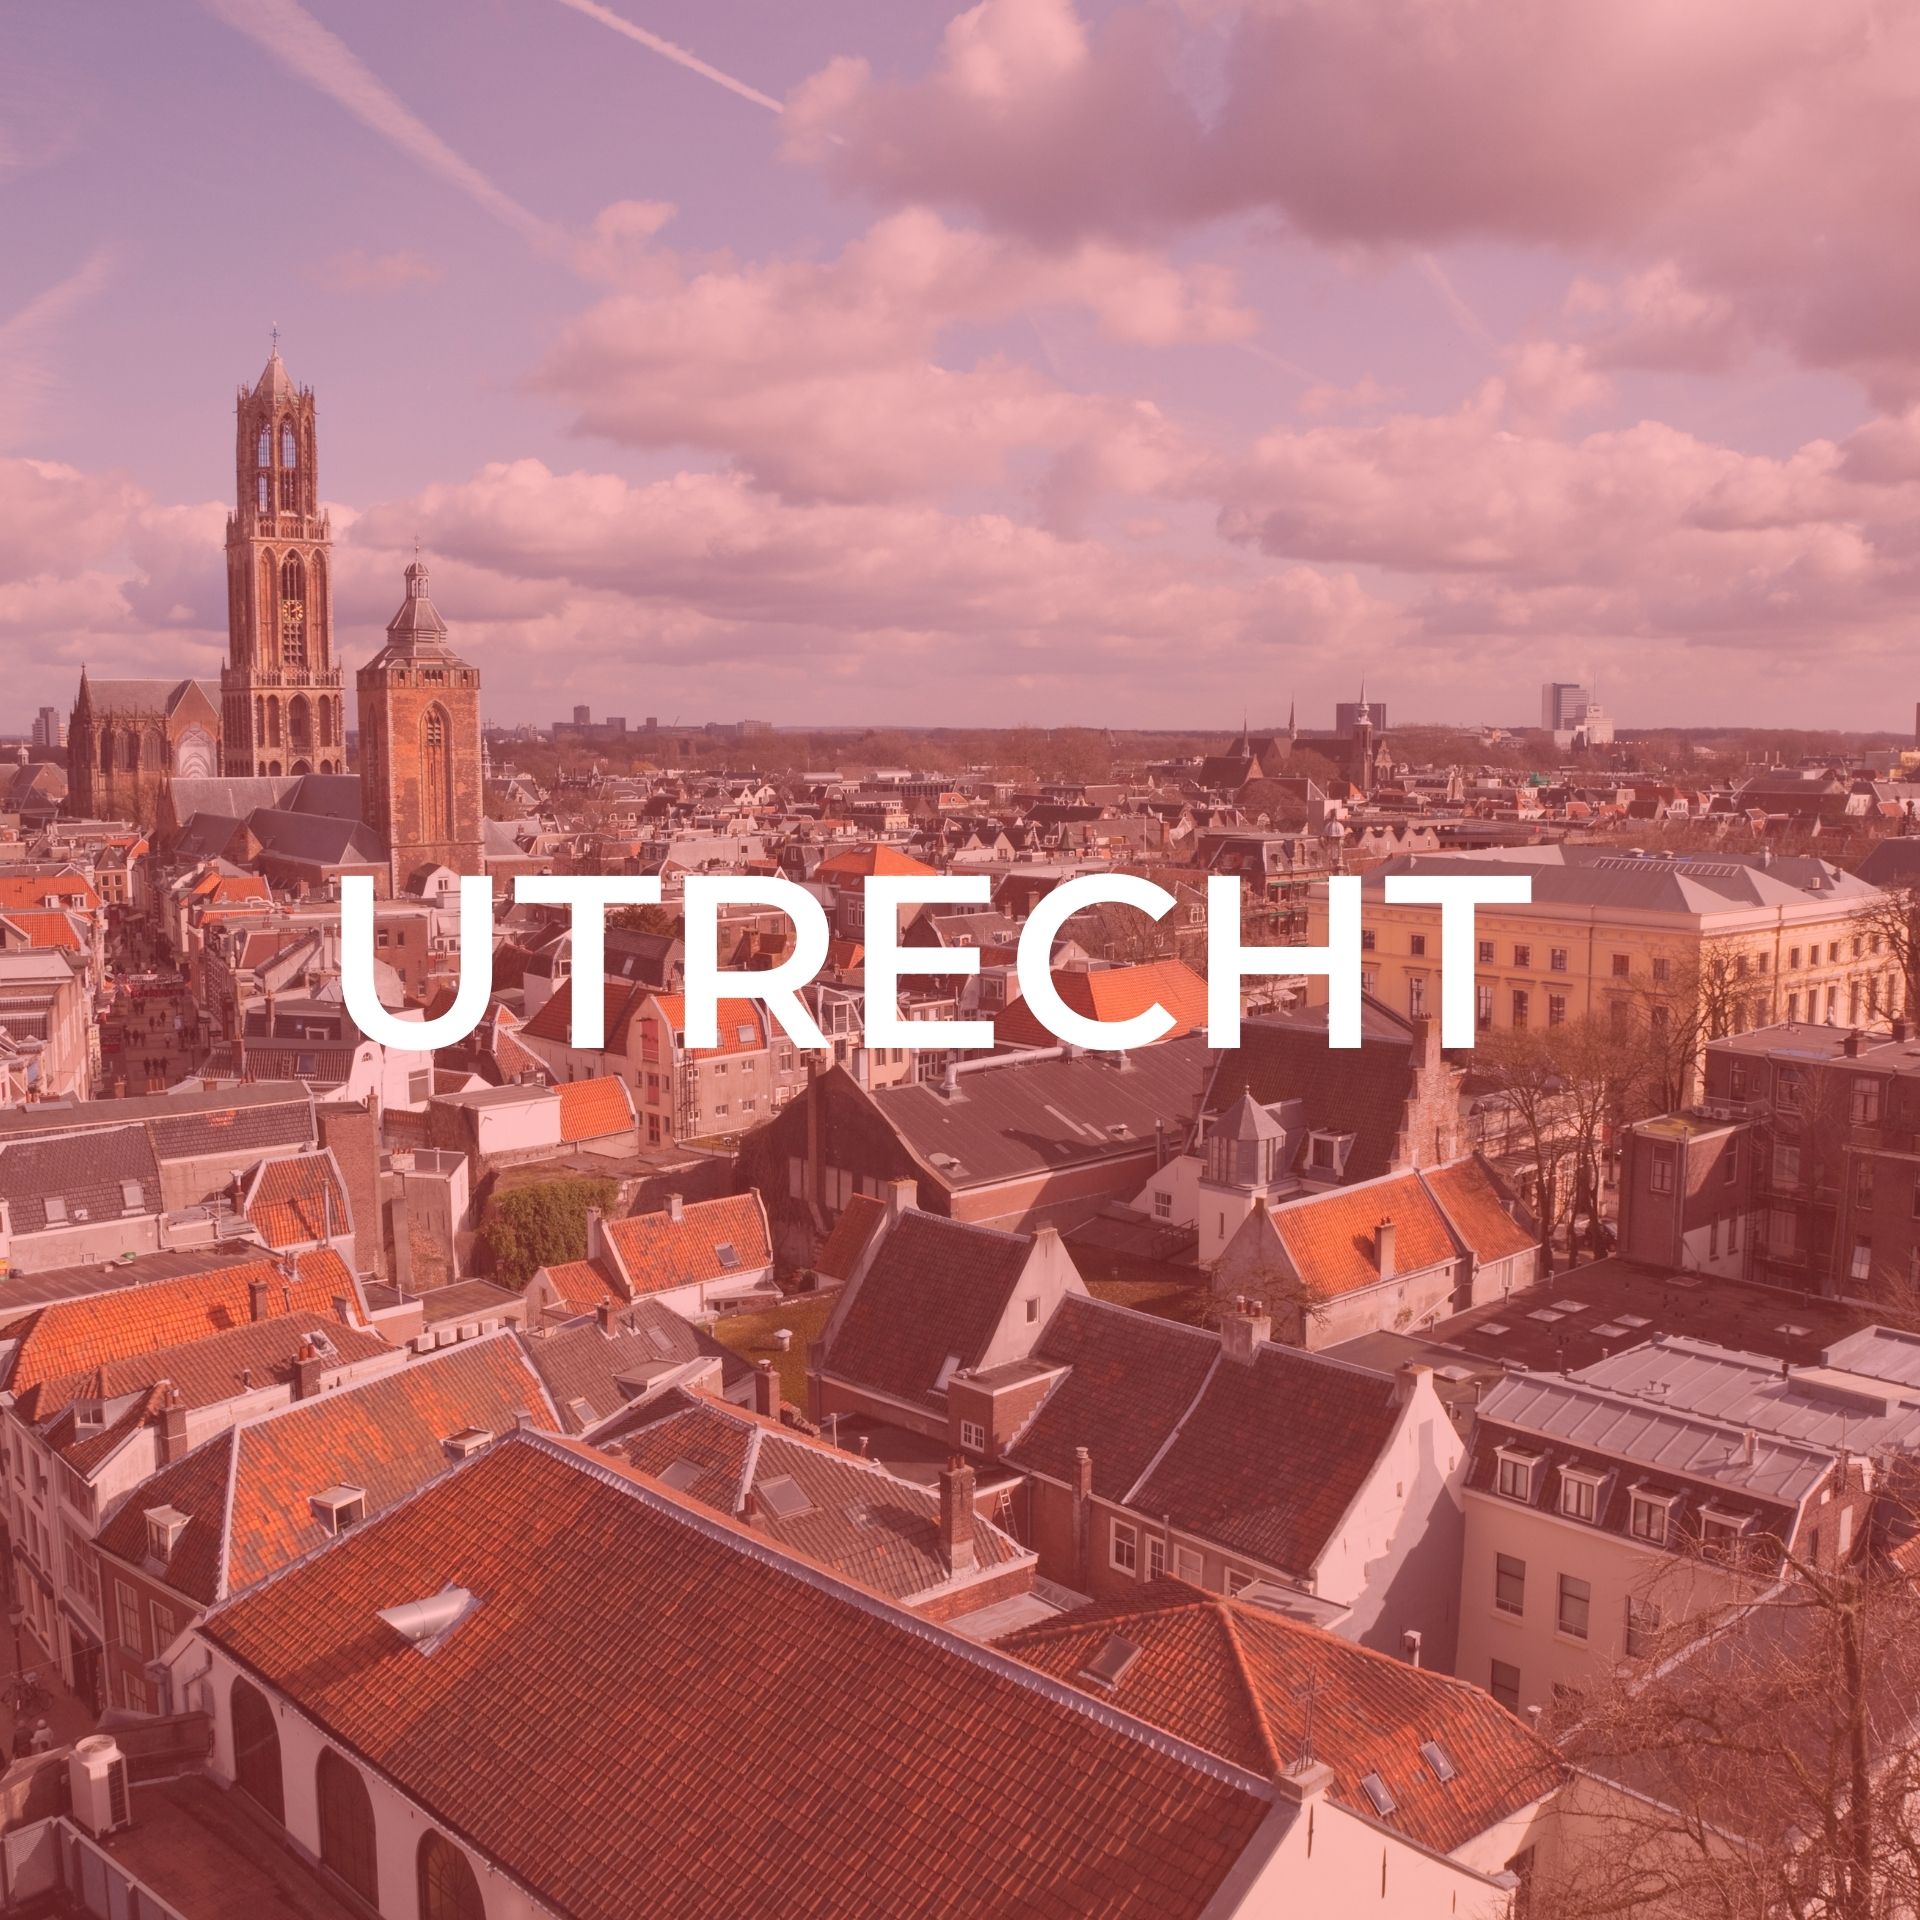 Utrecht picture